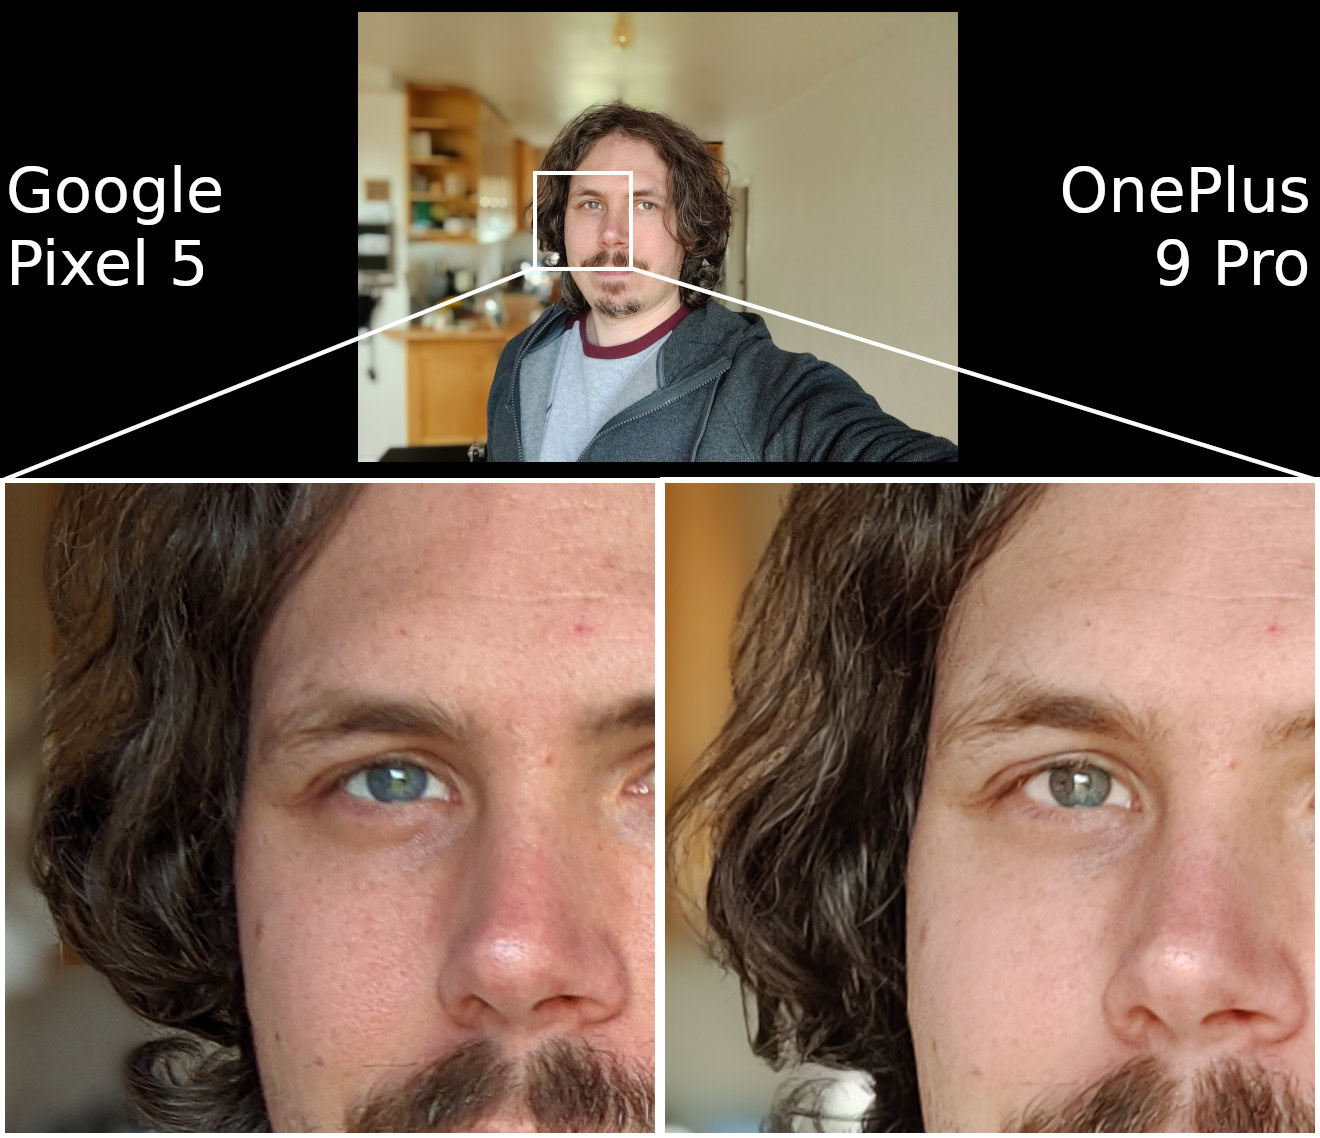 OnePlus 9 Pro vs Google Pixel 5 selfie